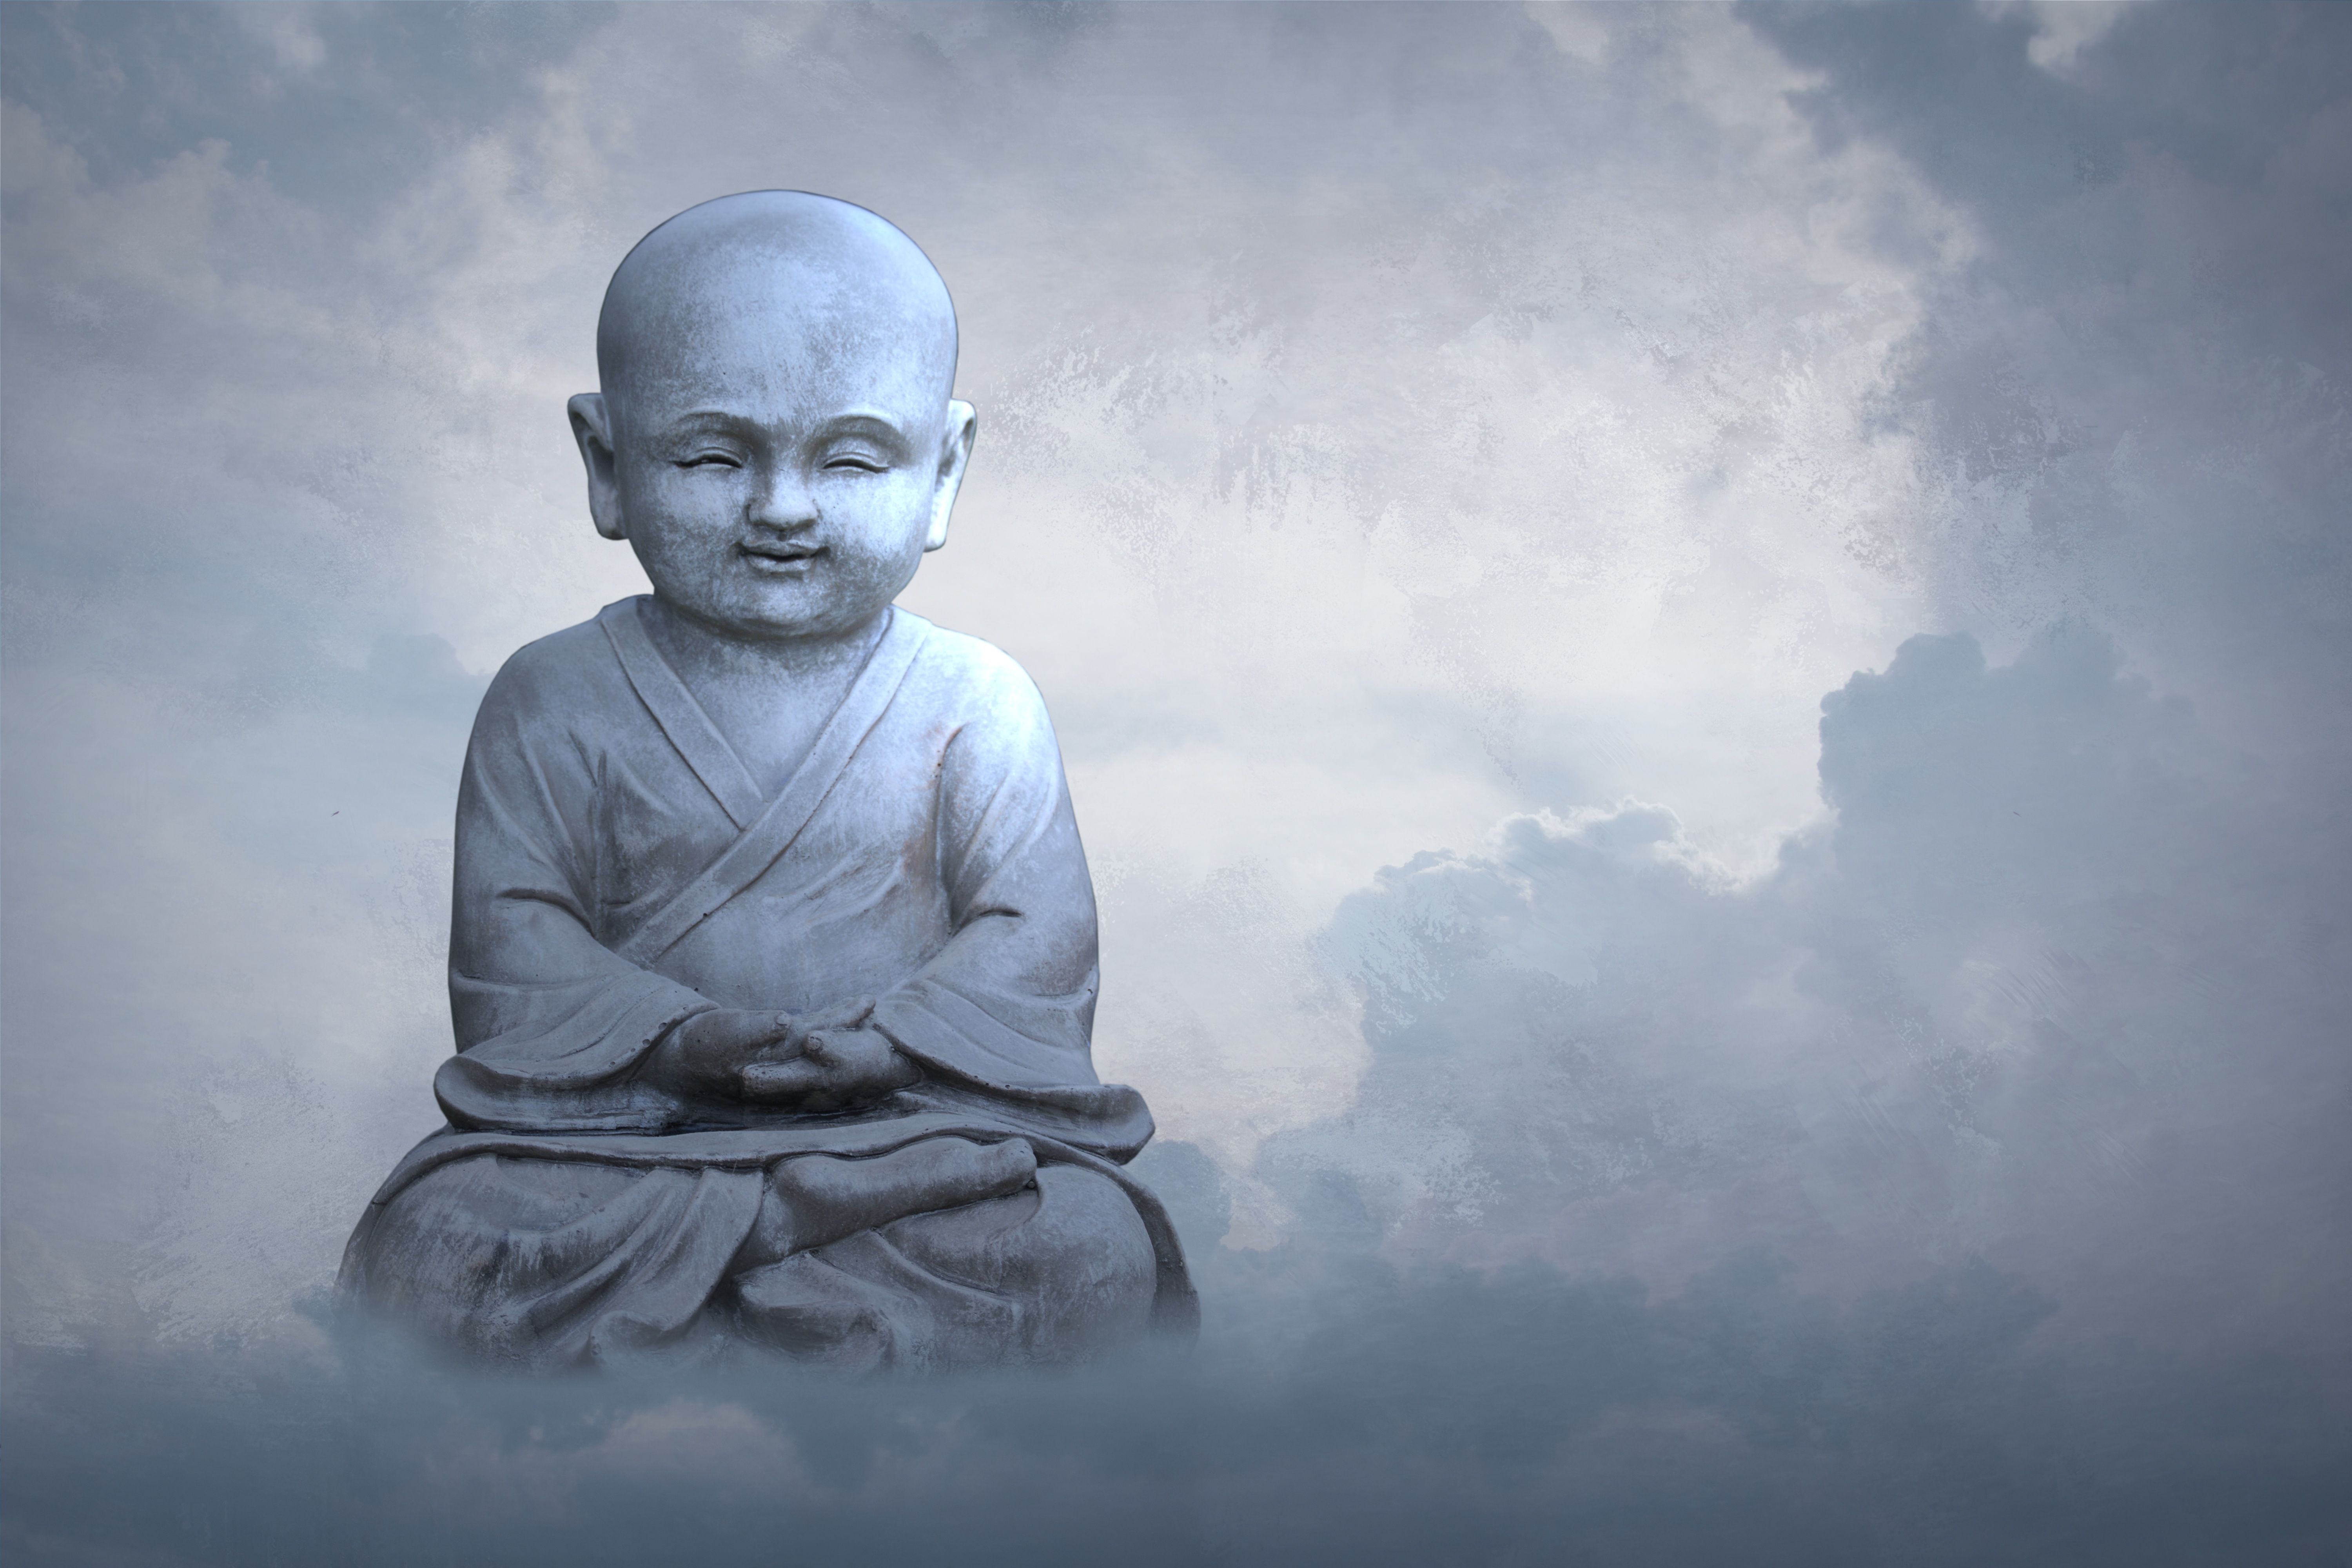 Популярные заставки и фоны Буддизм на компьютер